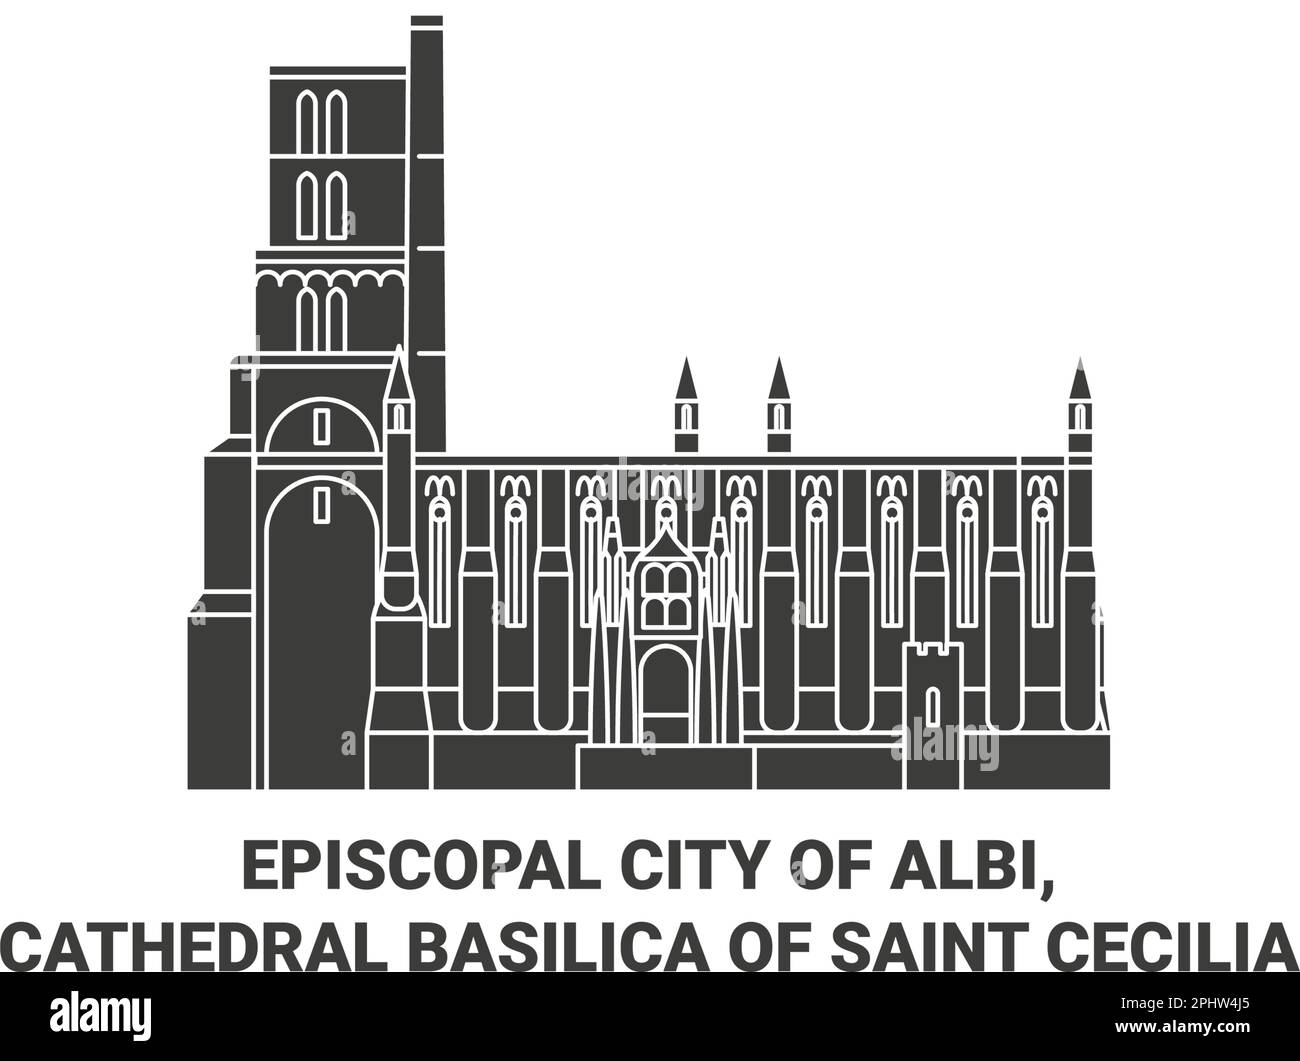 Francia, Ciudad Episcopal de Albi, Catedral Basílica de Santa Cecilia ilustración vectorial de referencia de viaje Ilustración del Vector